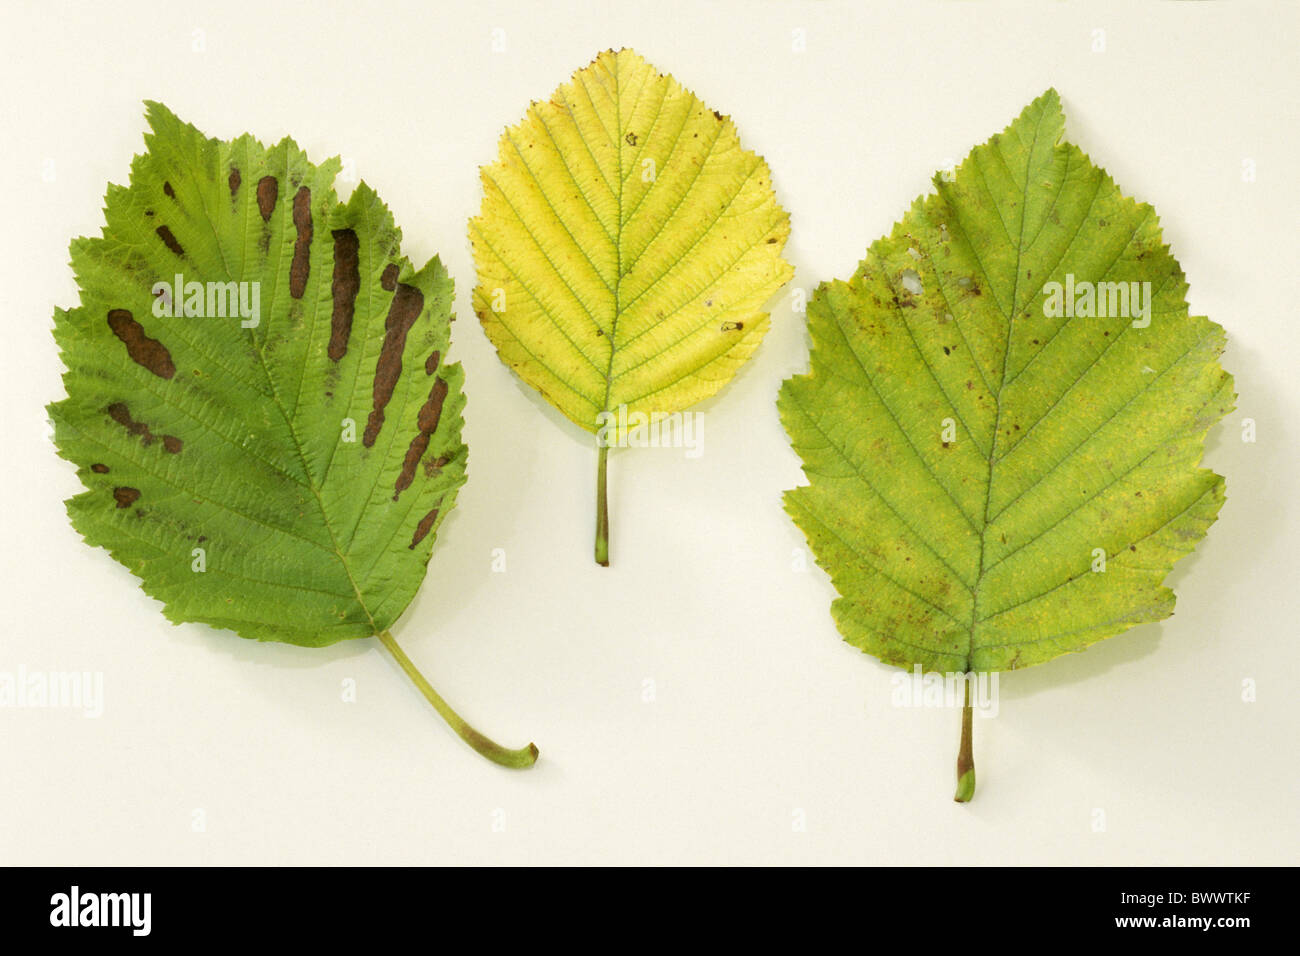 Grey Alder (Alnus incana), leaves, studio picture. Stock Photo